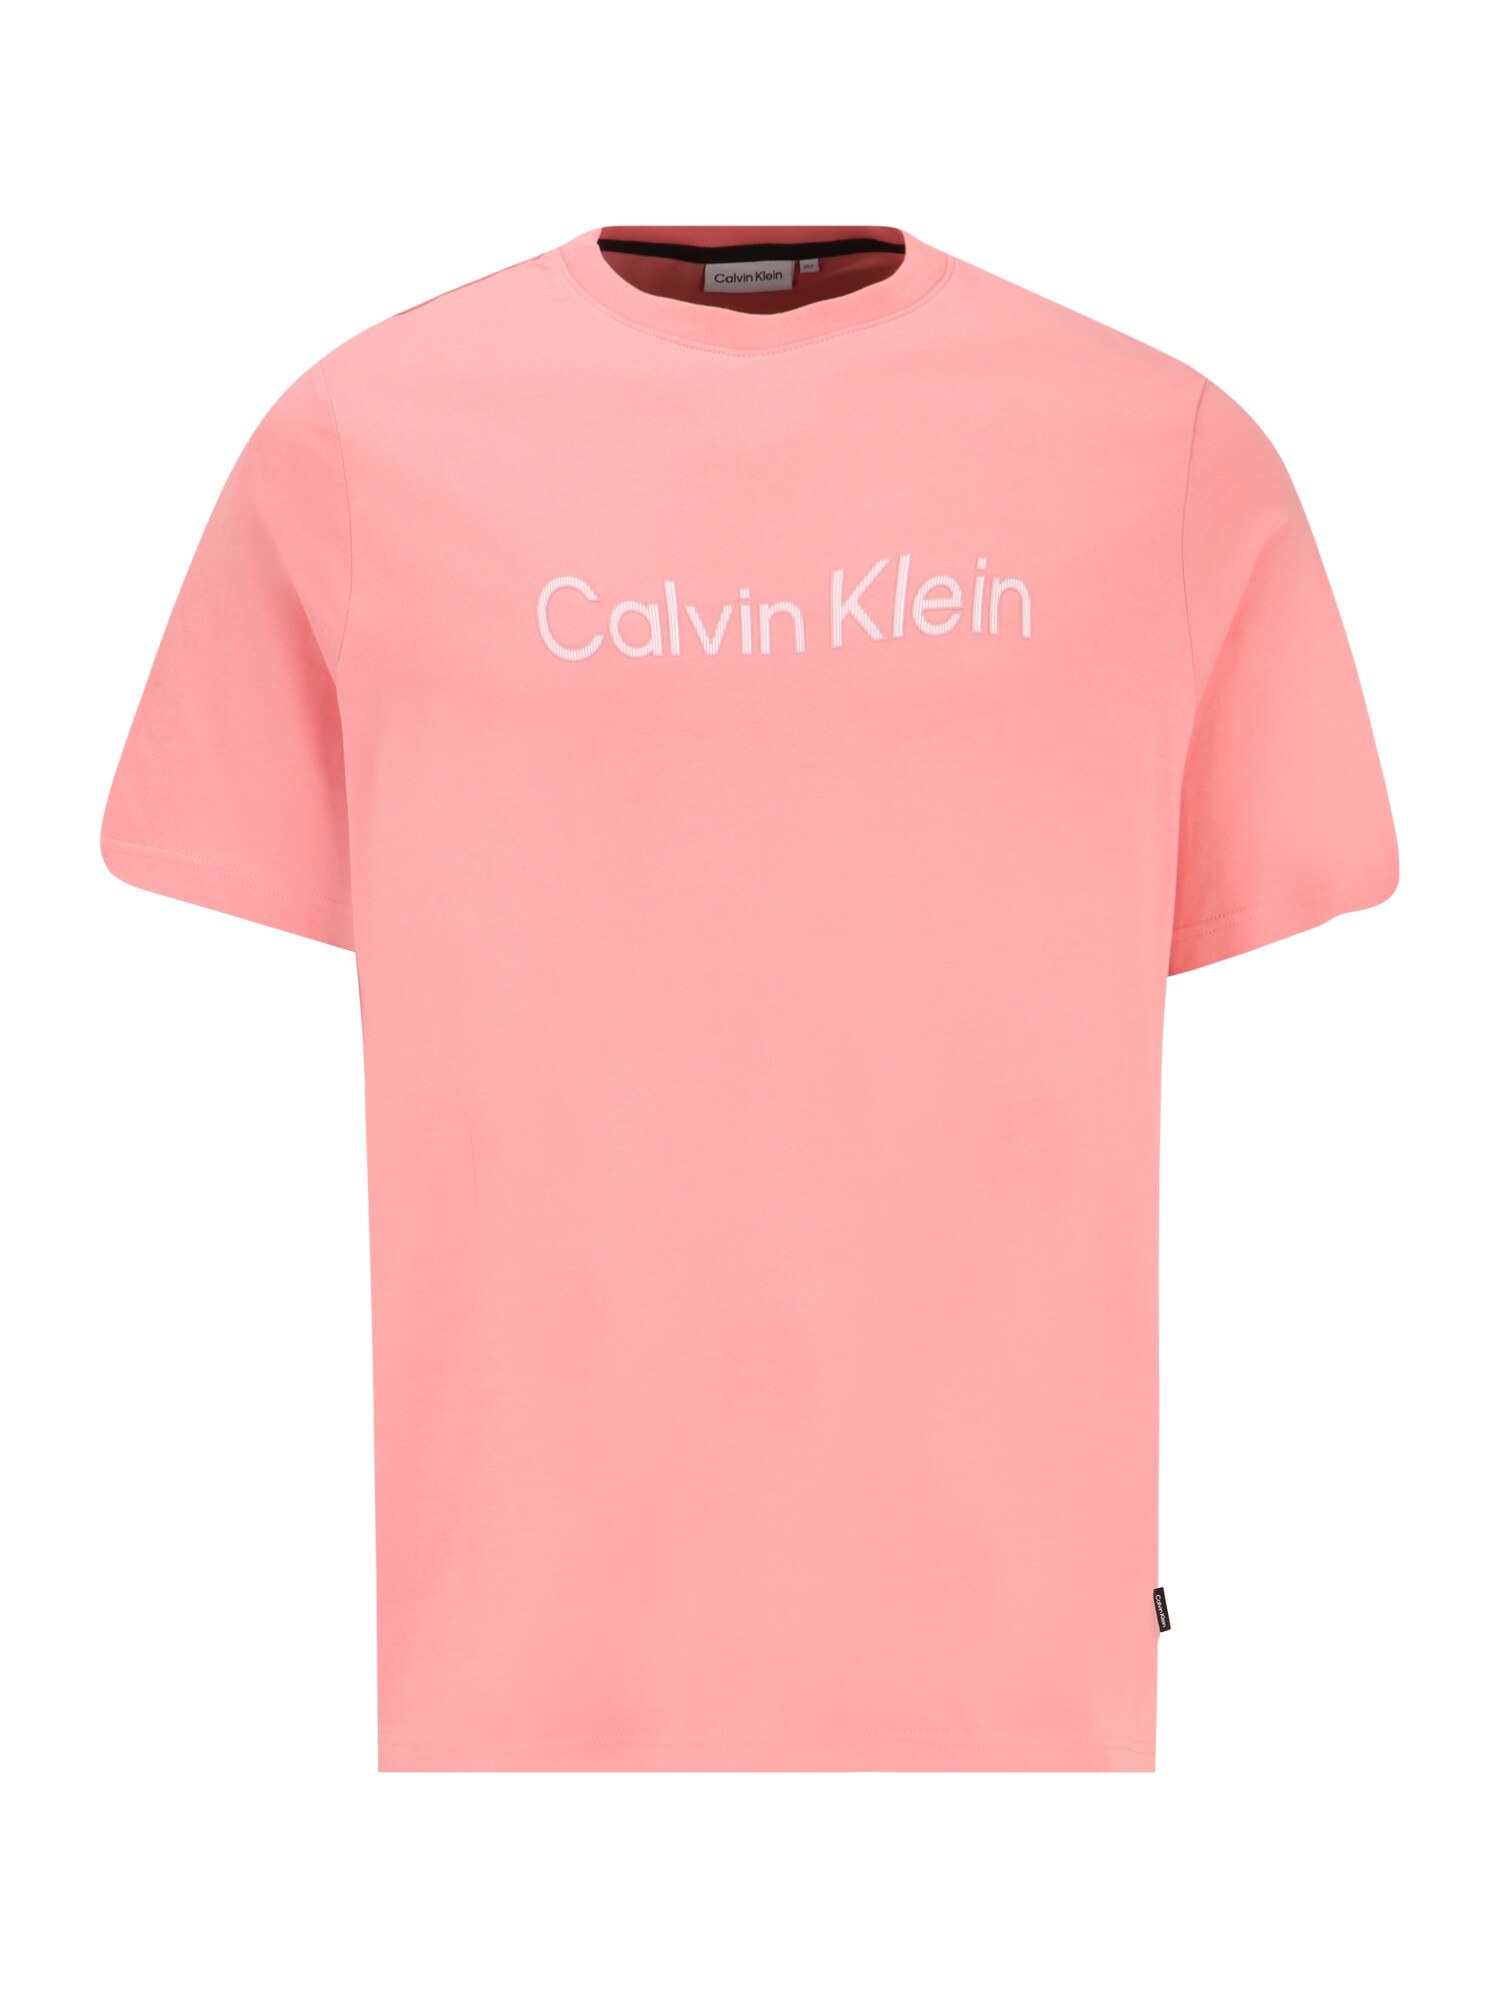 Calvin Klein Big & Tall Marškinėliai balta / ryškiai rožinė spalva